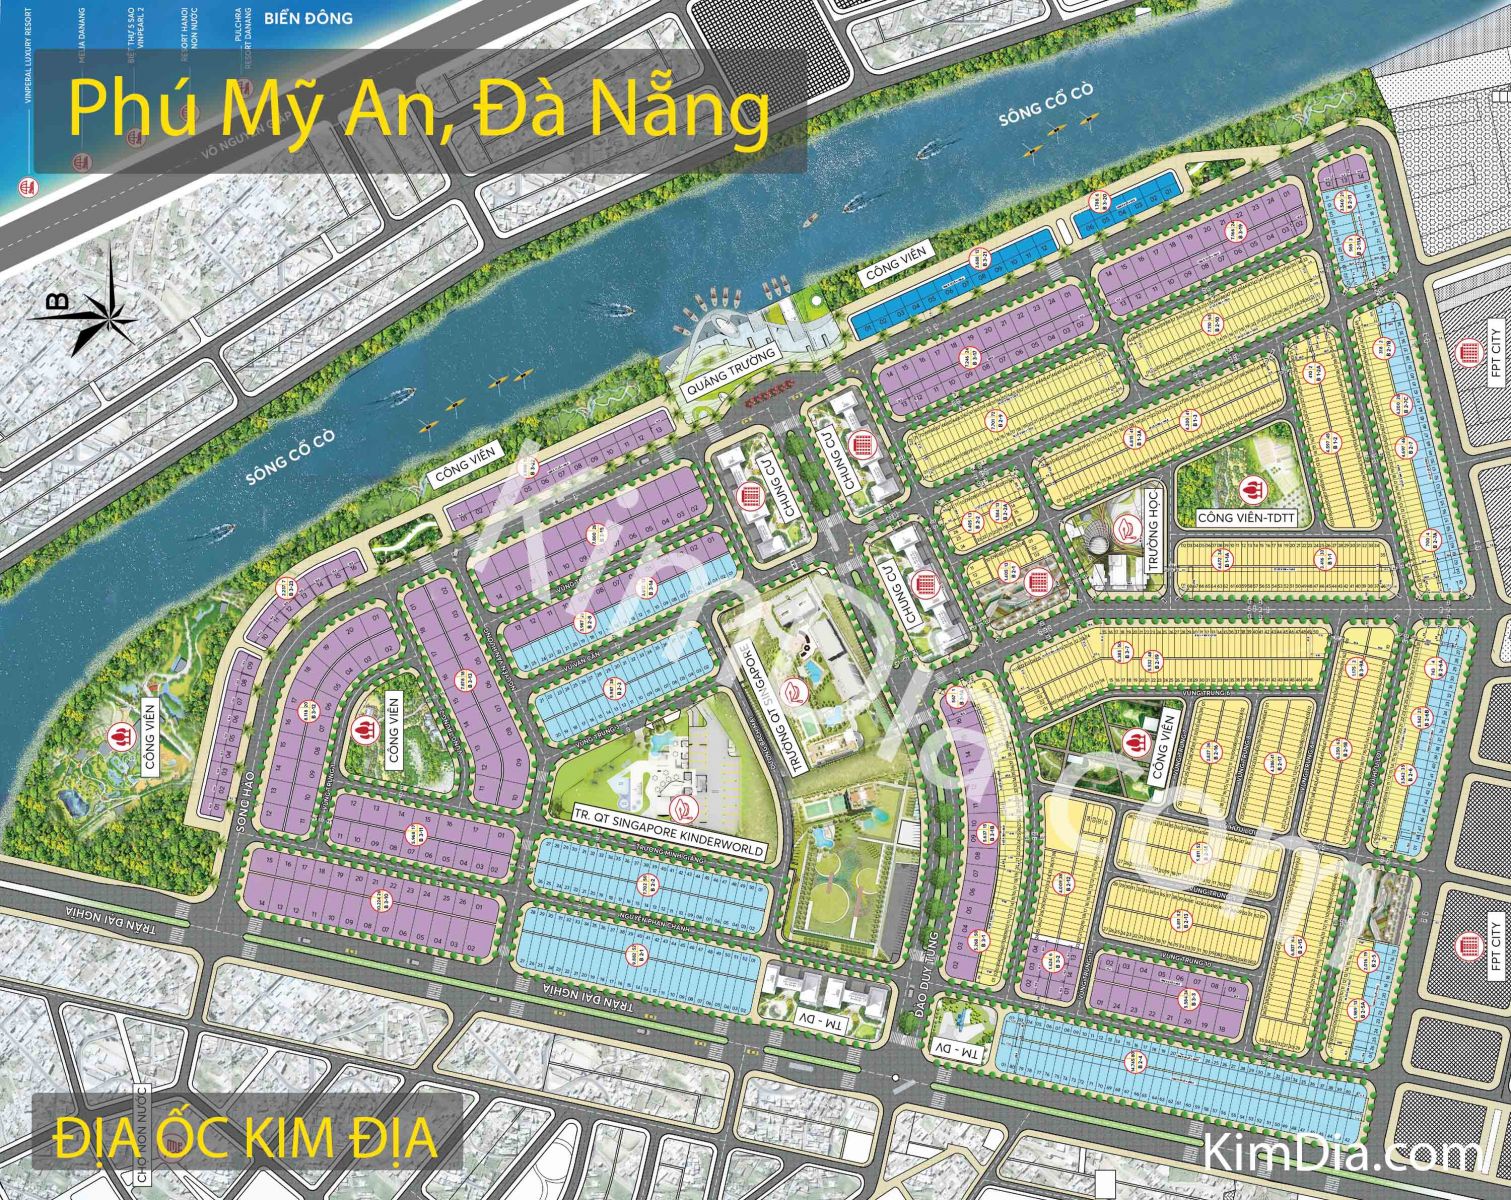 Bản đồ Phú Mỹ An ở Đà Nẵng như thế nào?